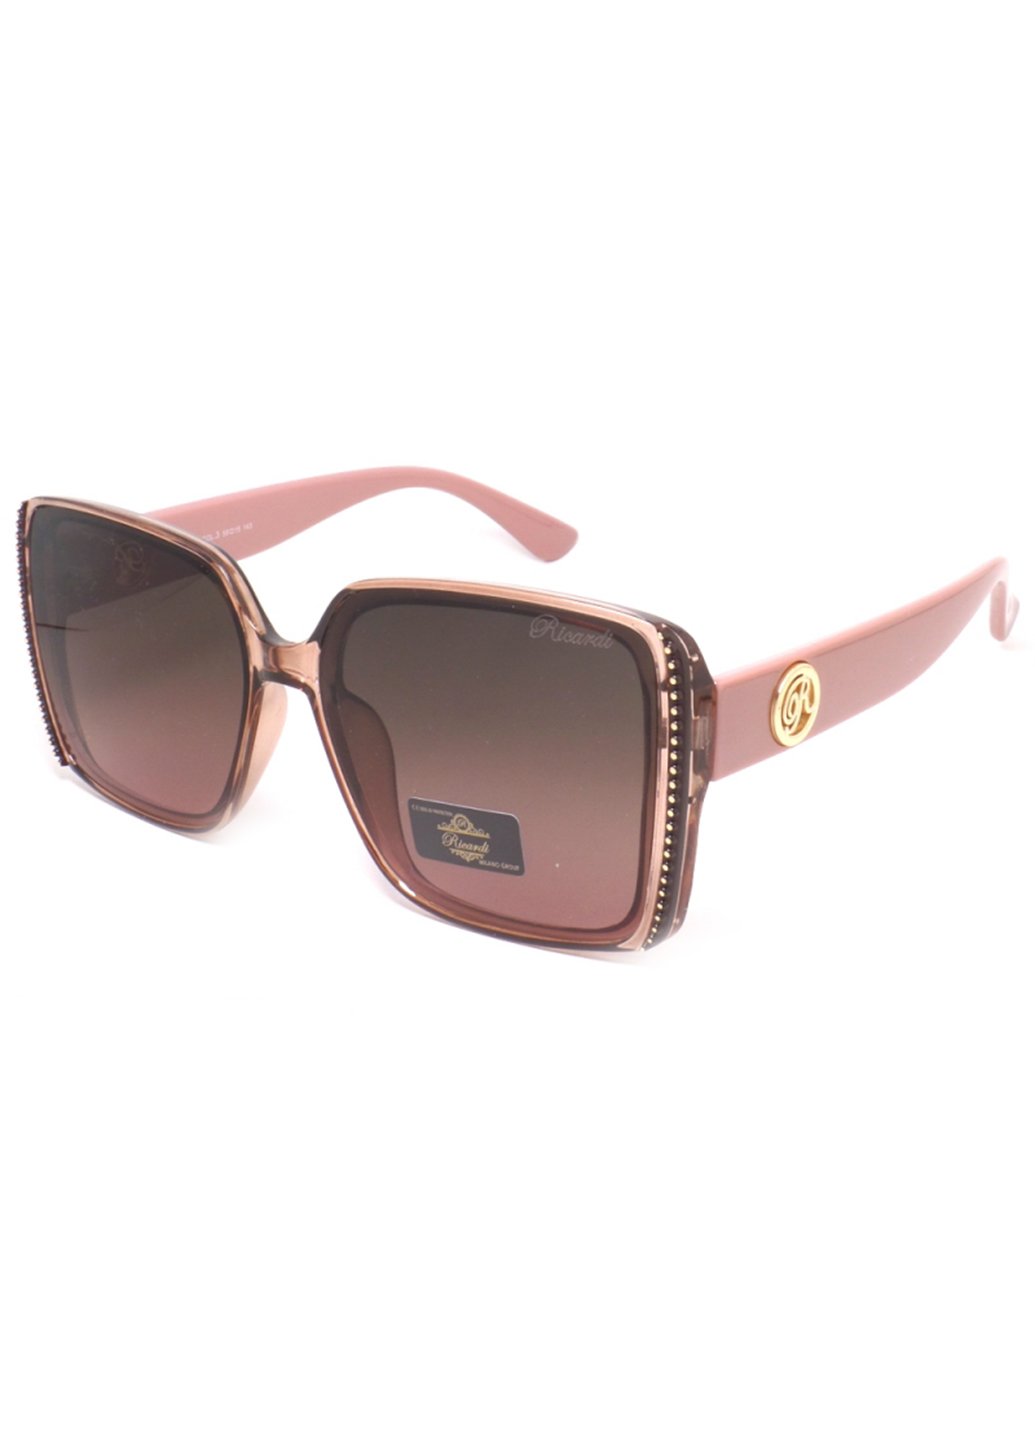 Купить Женские солнцезащитные очки Ricardi RC0139 110006 - Коричневый в интернет-магазине